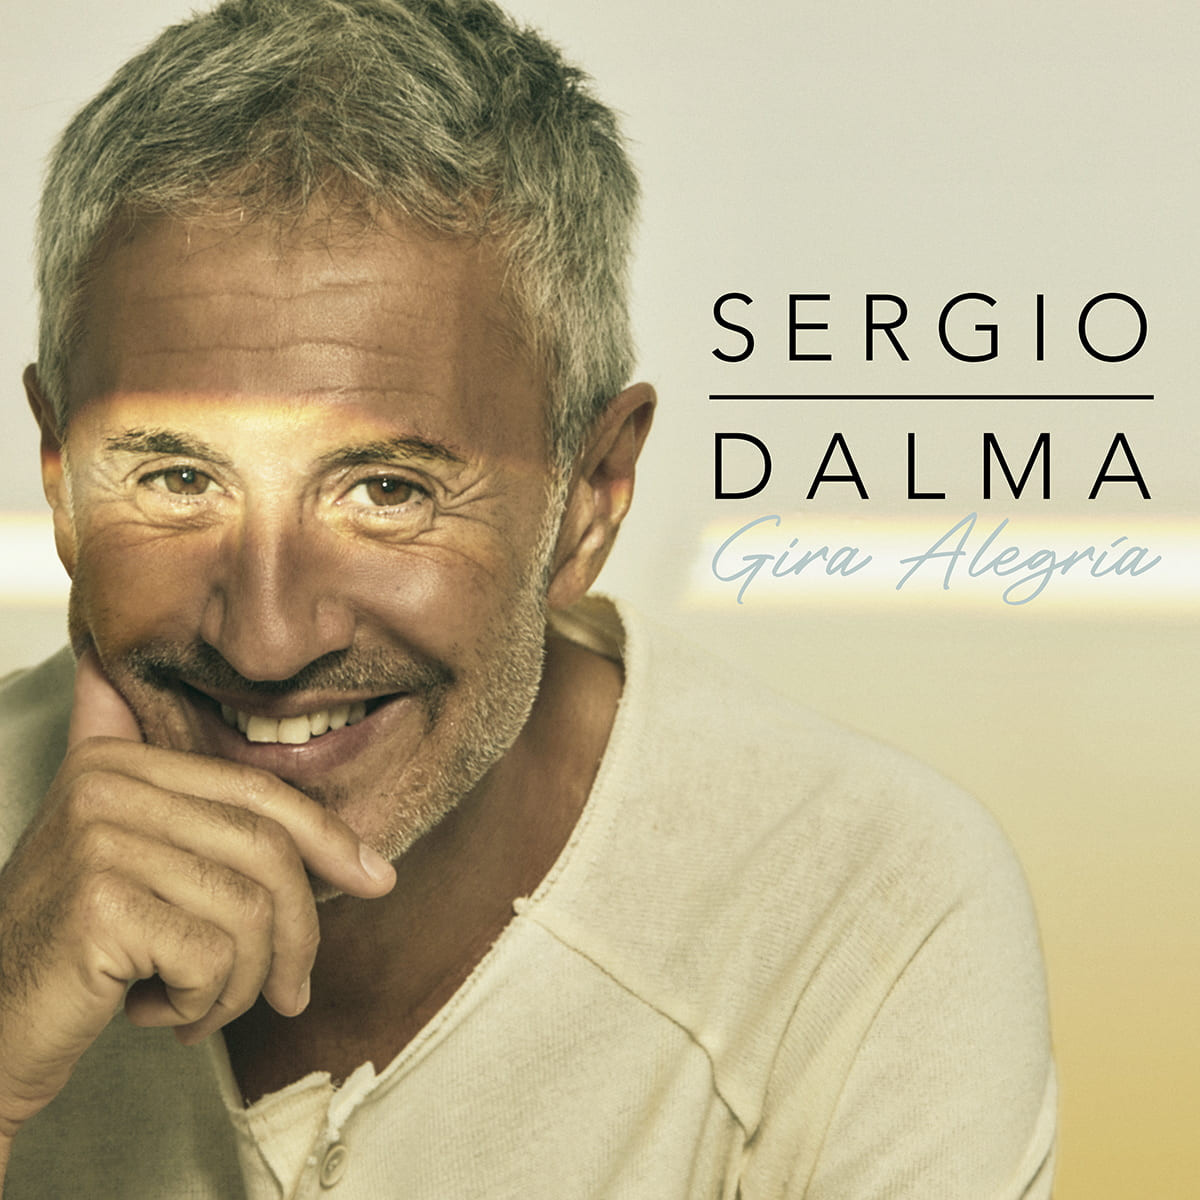 Sergio Dalma Tour Alegria (1)